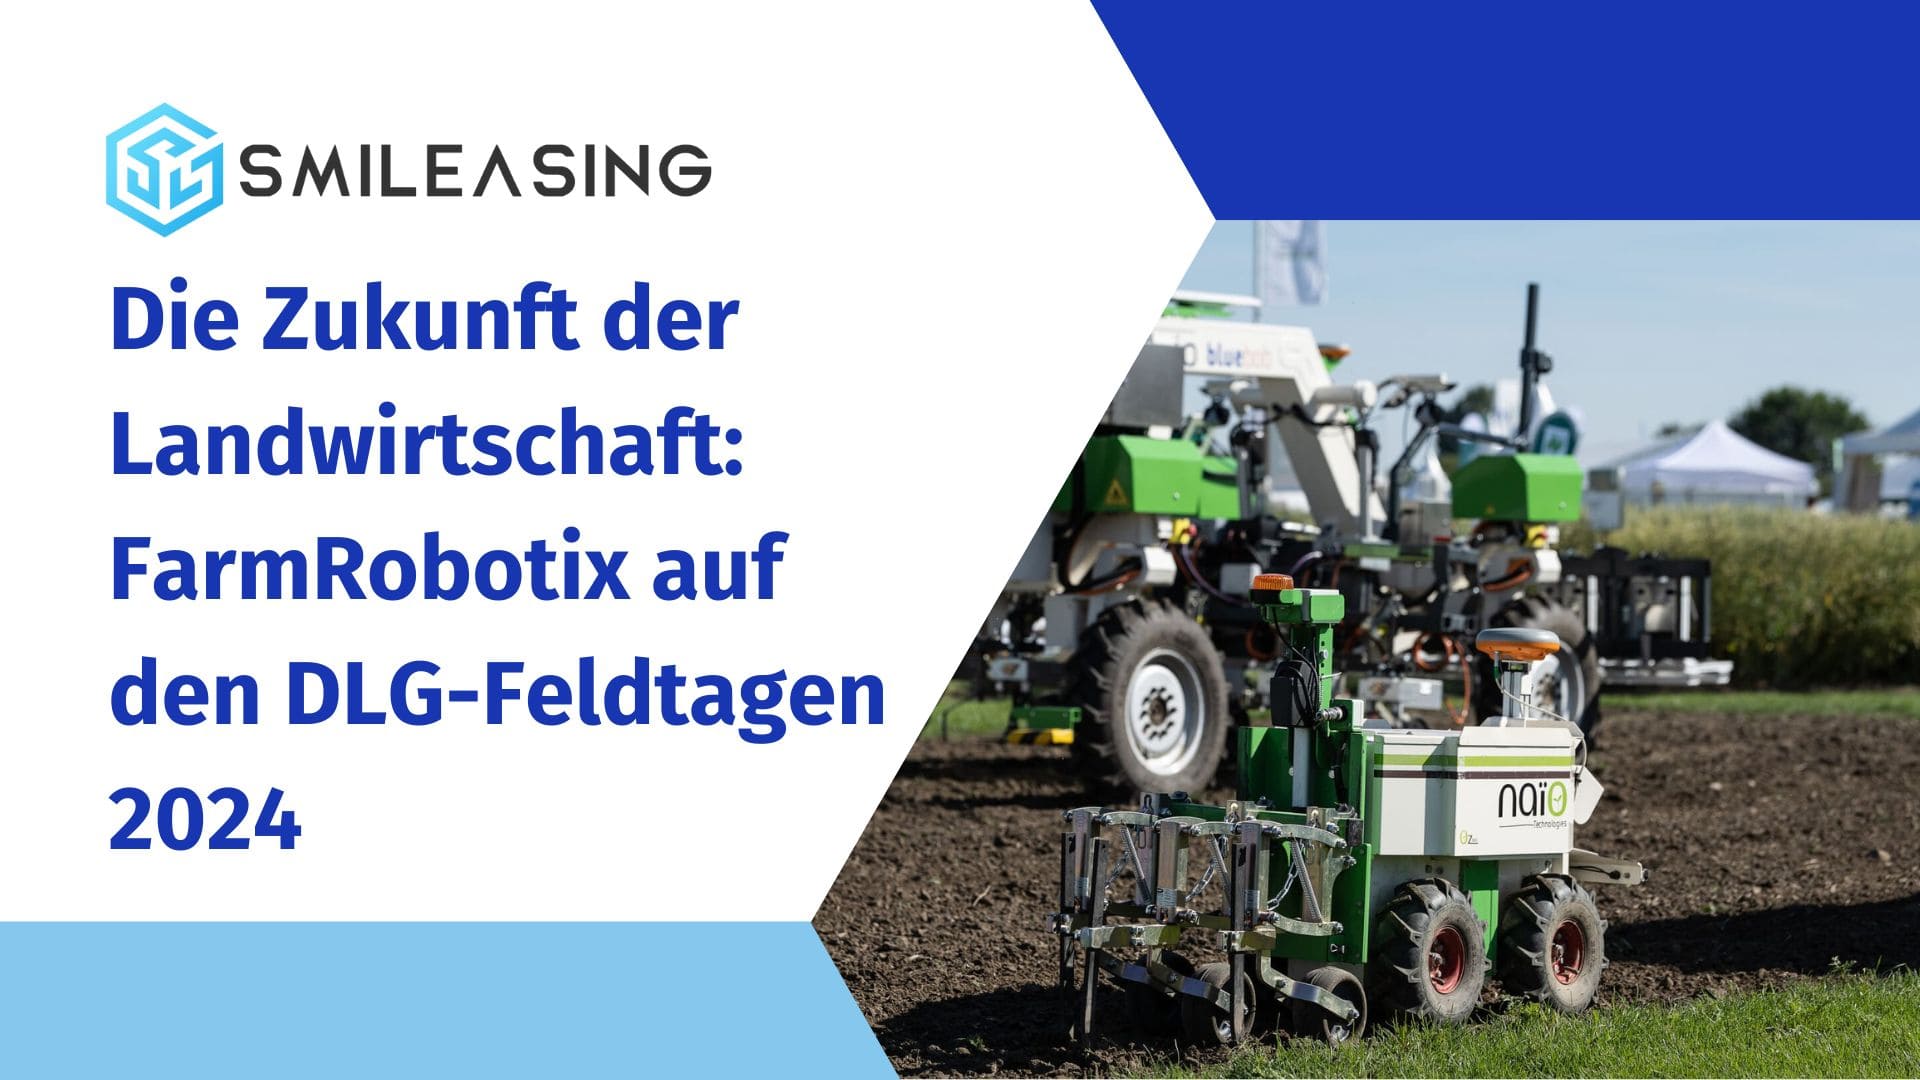 Die Zukunft der Landwirtschaft - FarmRobotix auf den DLG-Feldtagen 2024